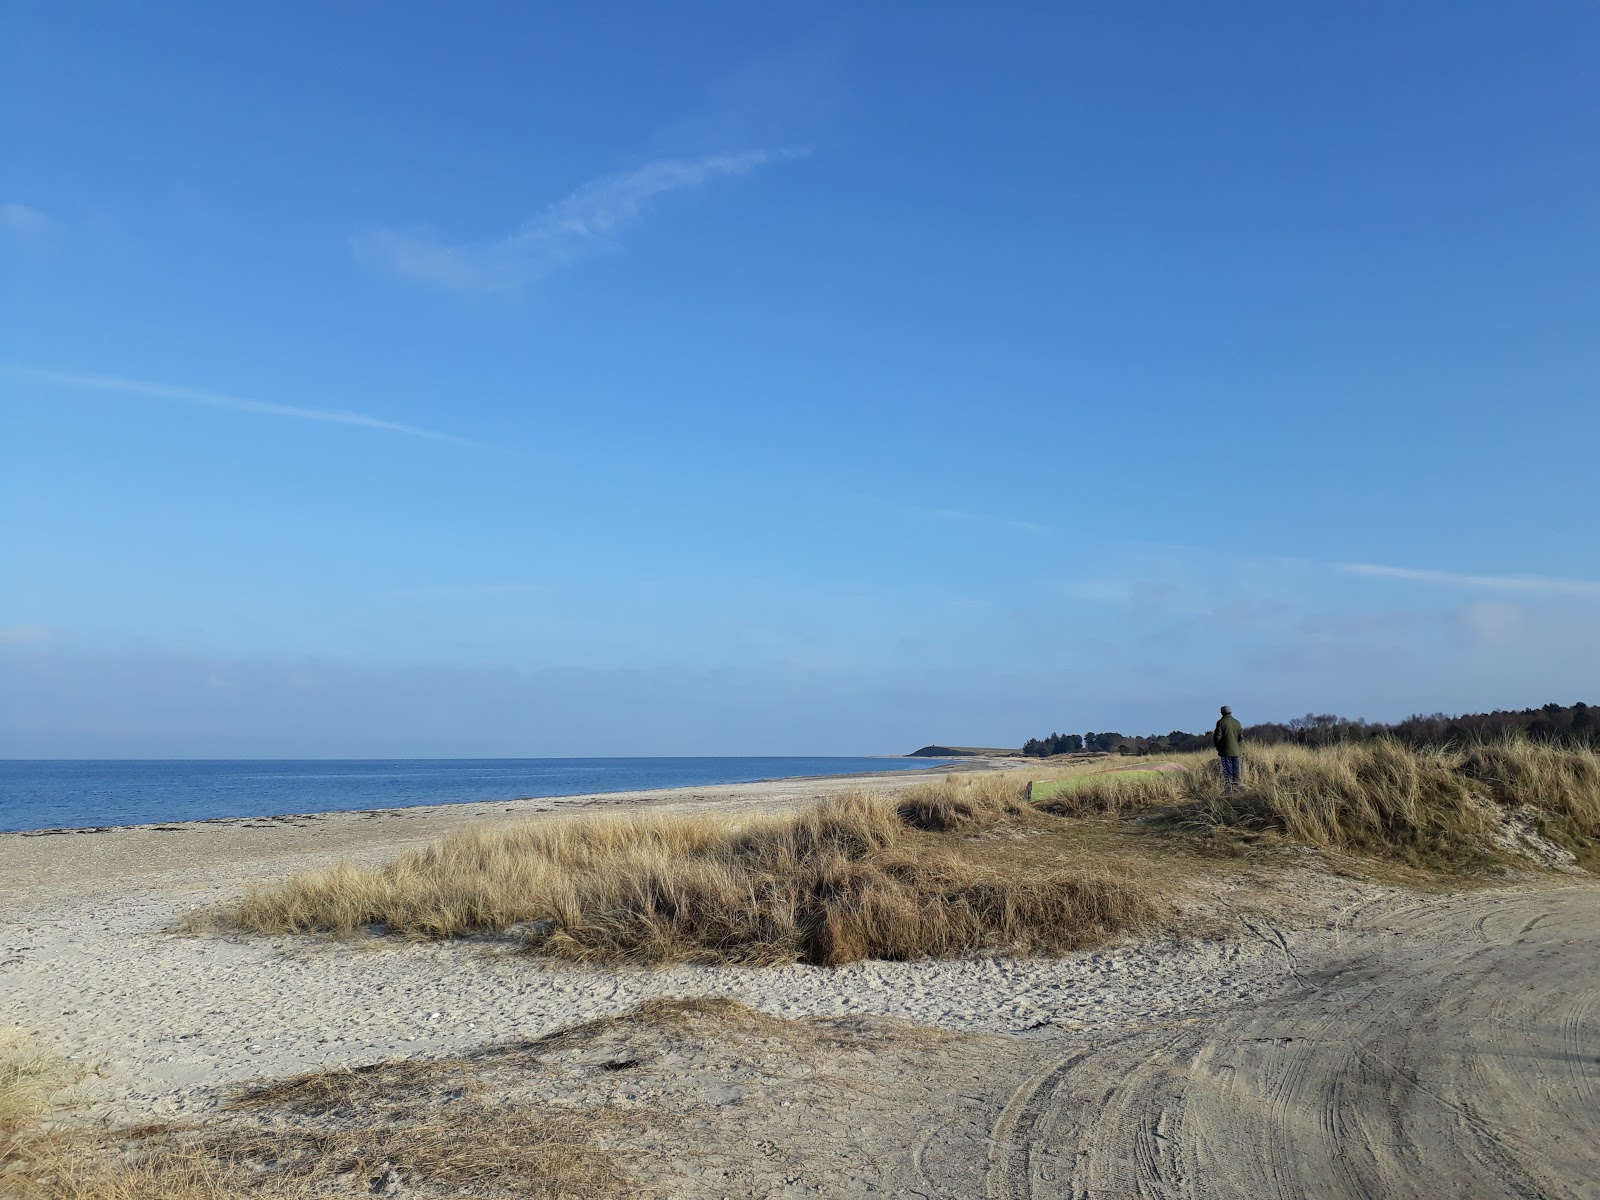 Φωτογραφία του Gjerrild Nord Beach με μακρά ευθεία ακτή